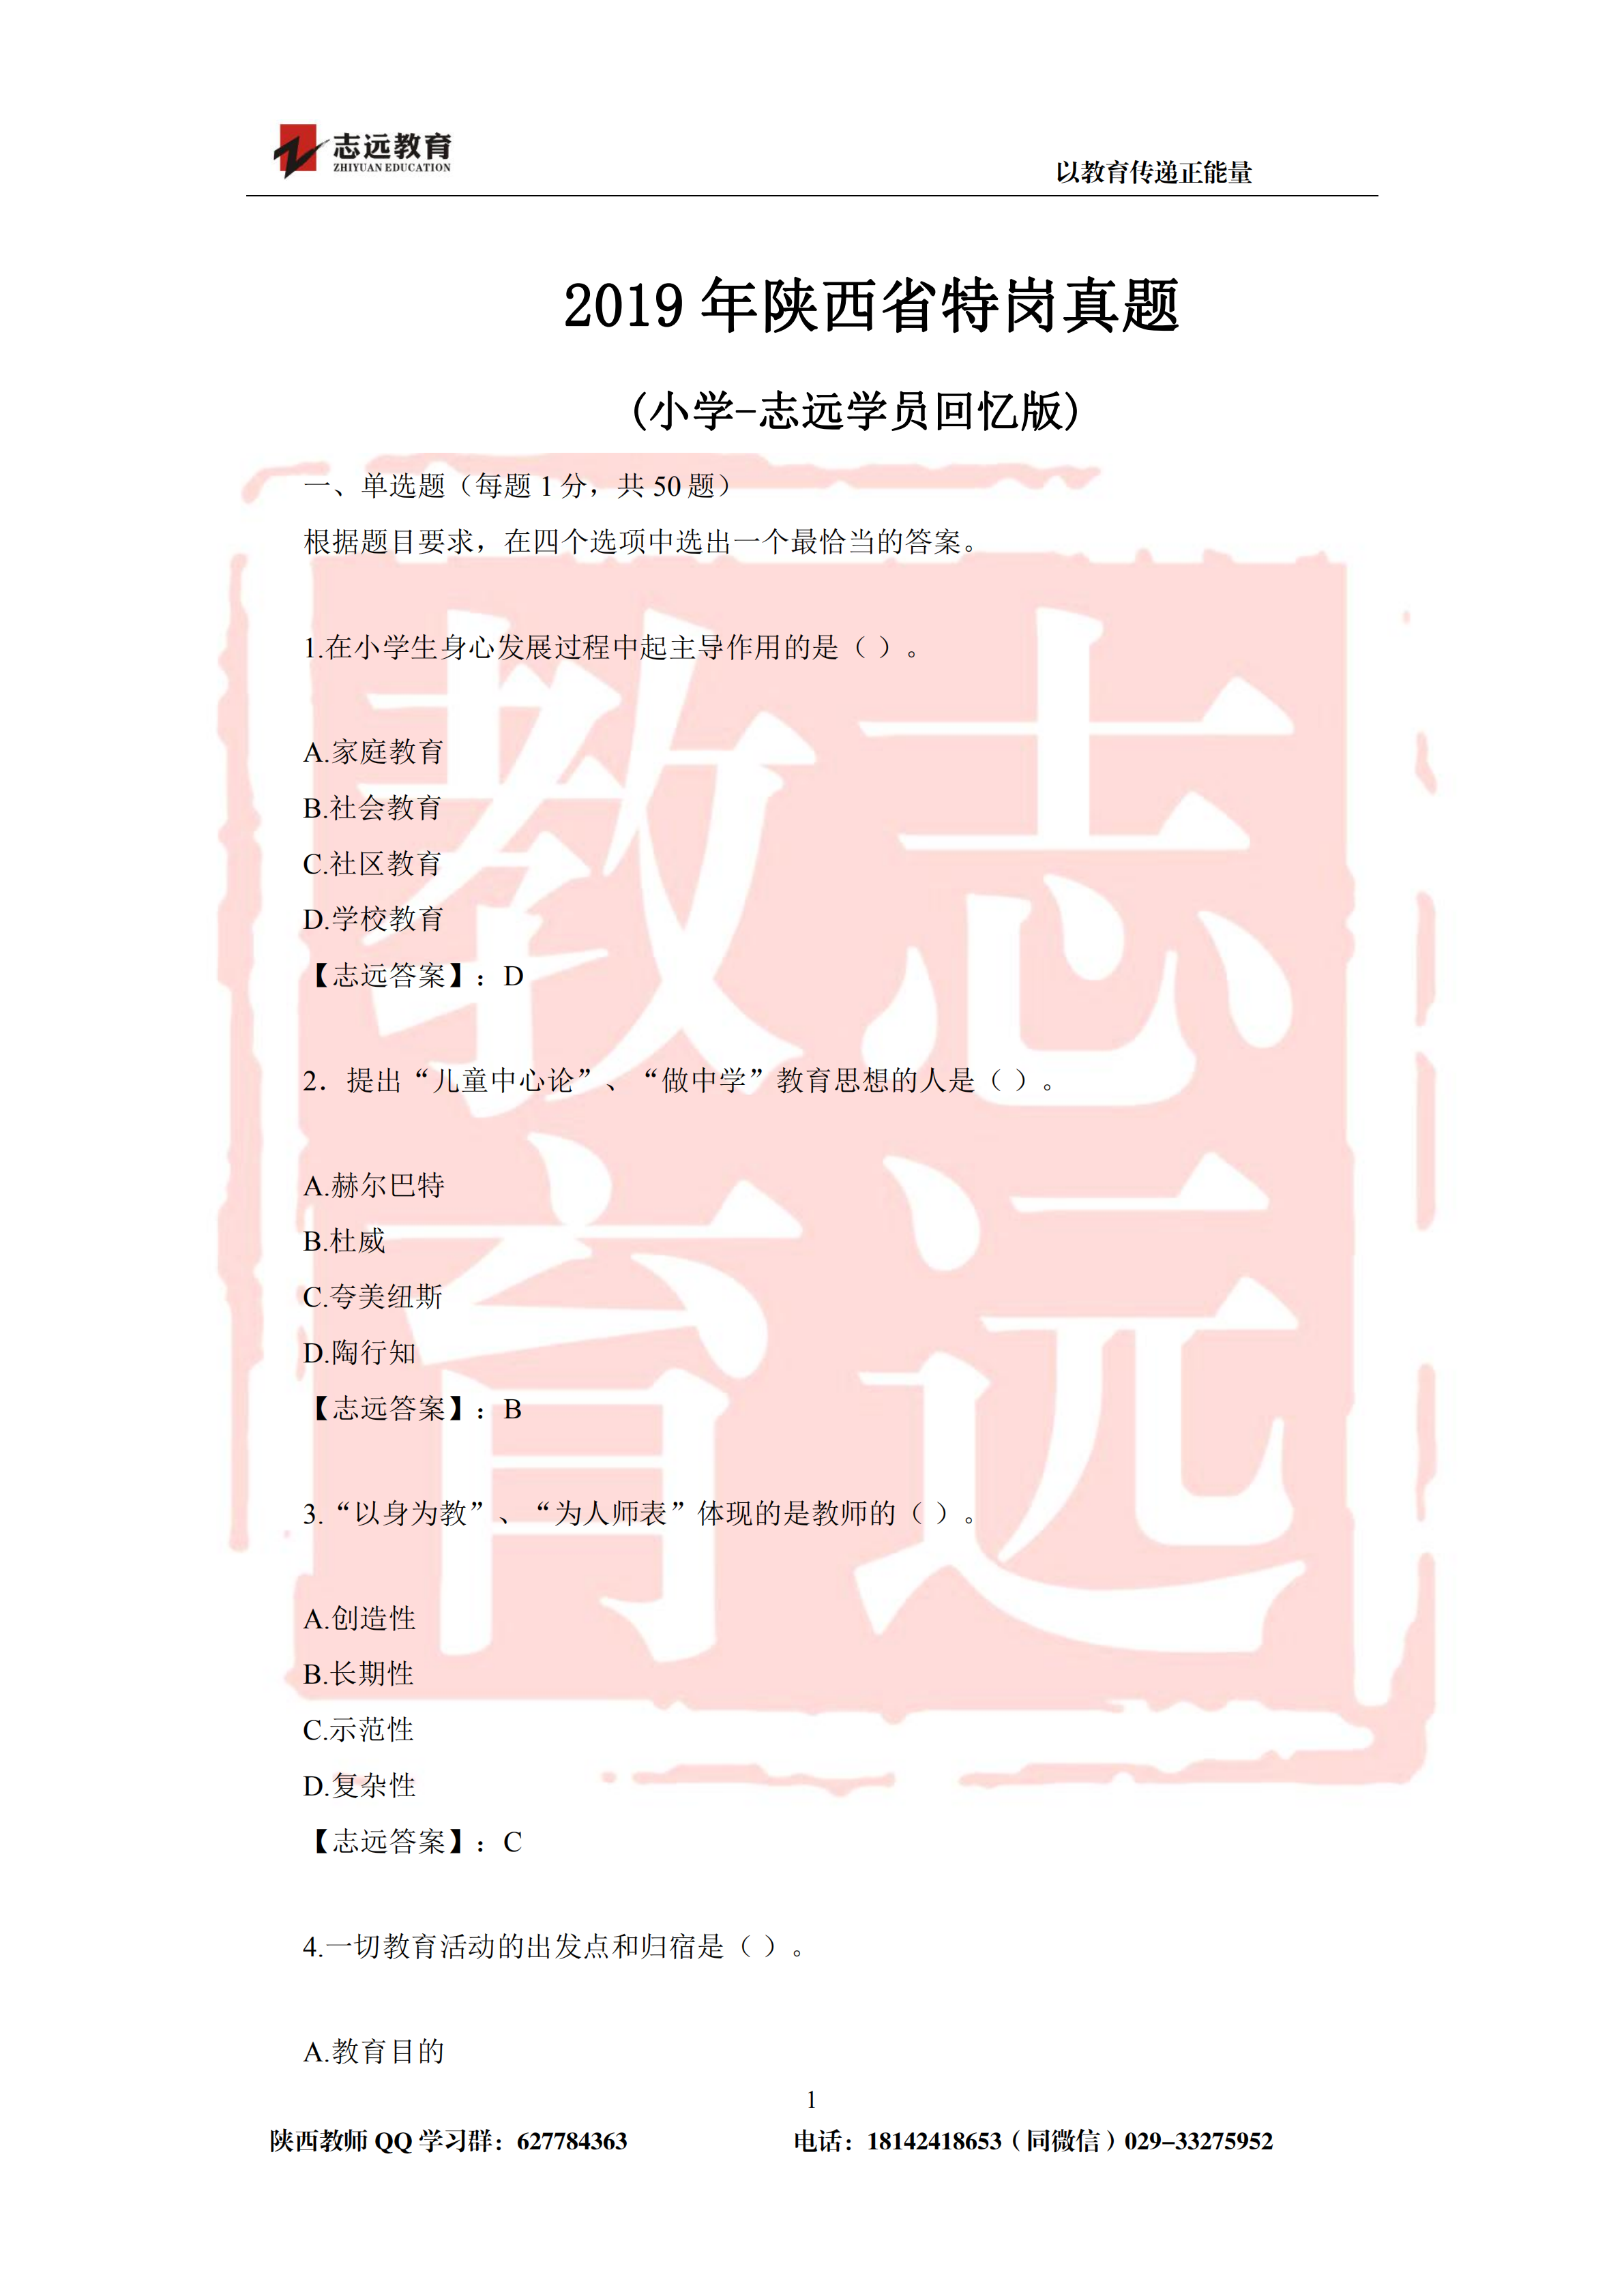 2019年陕西省特岗教师小学试题及答案-志远学员回忆版(图1)